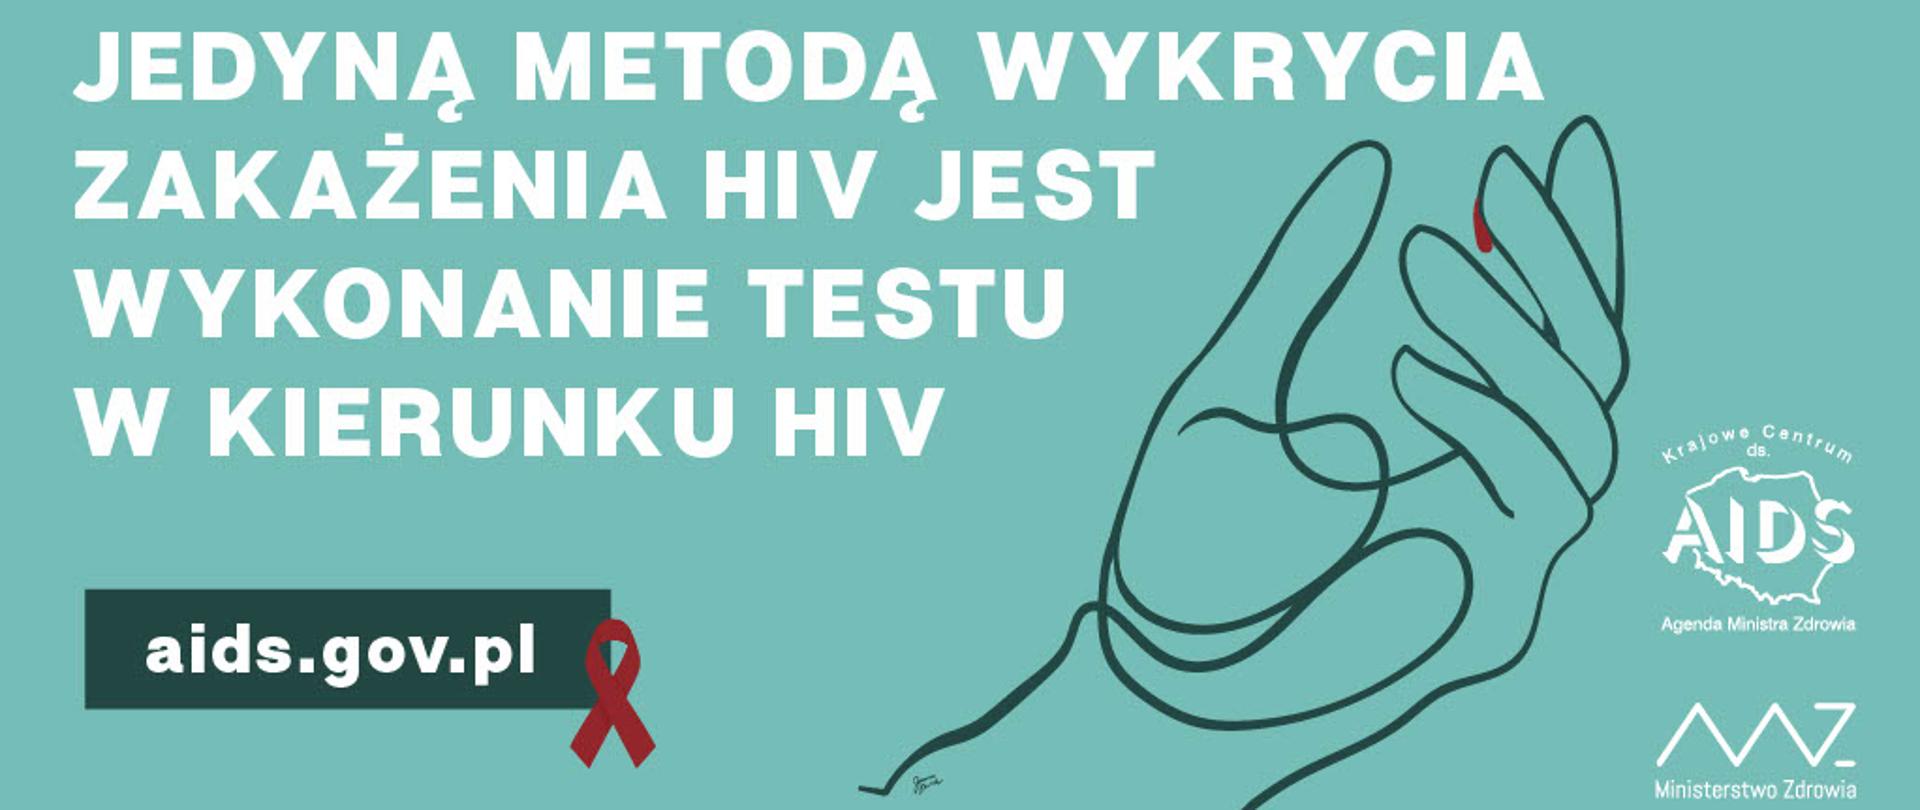 Napis na tle: "Jedena metoda wykrycia zakazenia HIV jest wykonanie testu w kierunku HIV"